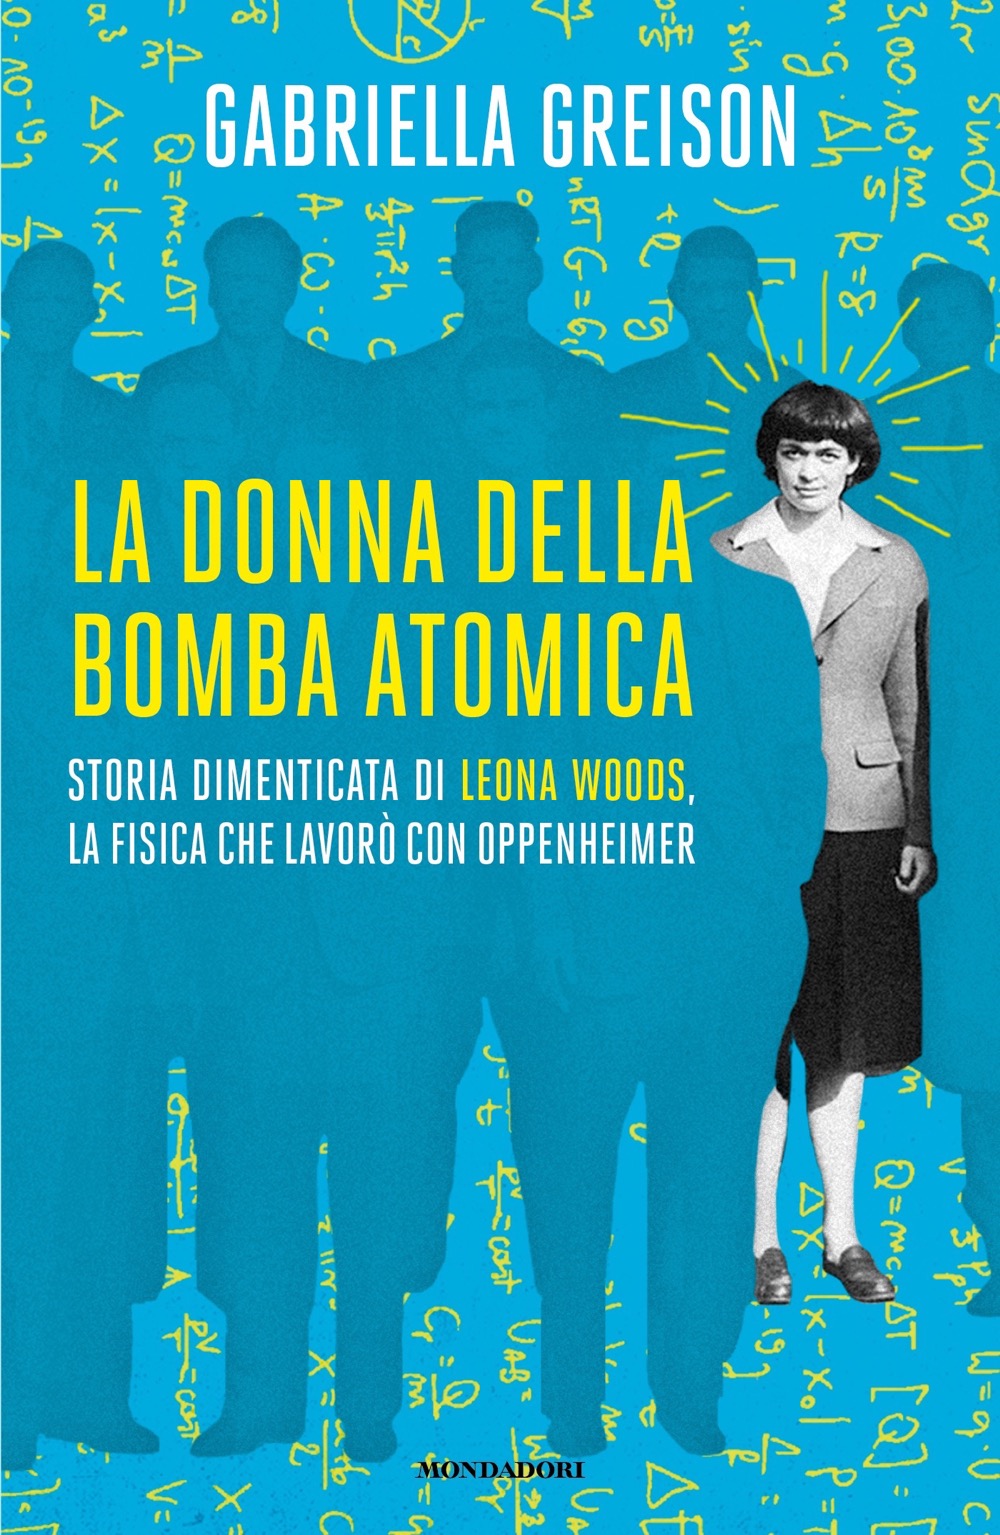 Spettacolo: “La donna della bomba atomica“